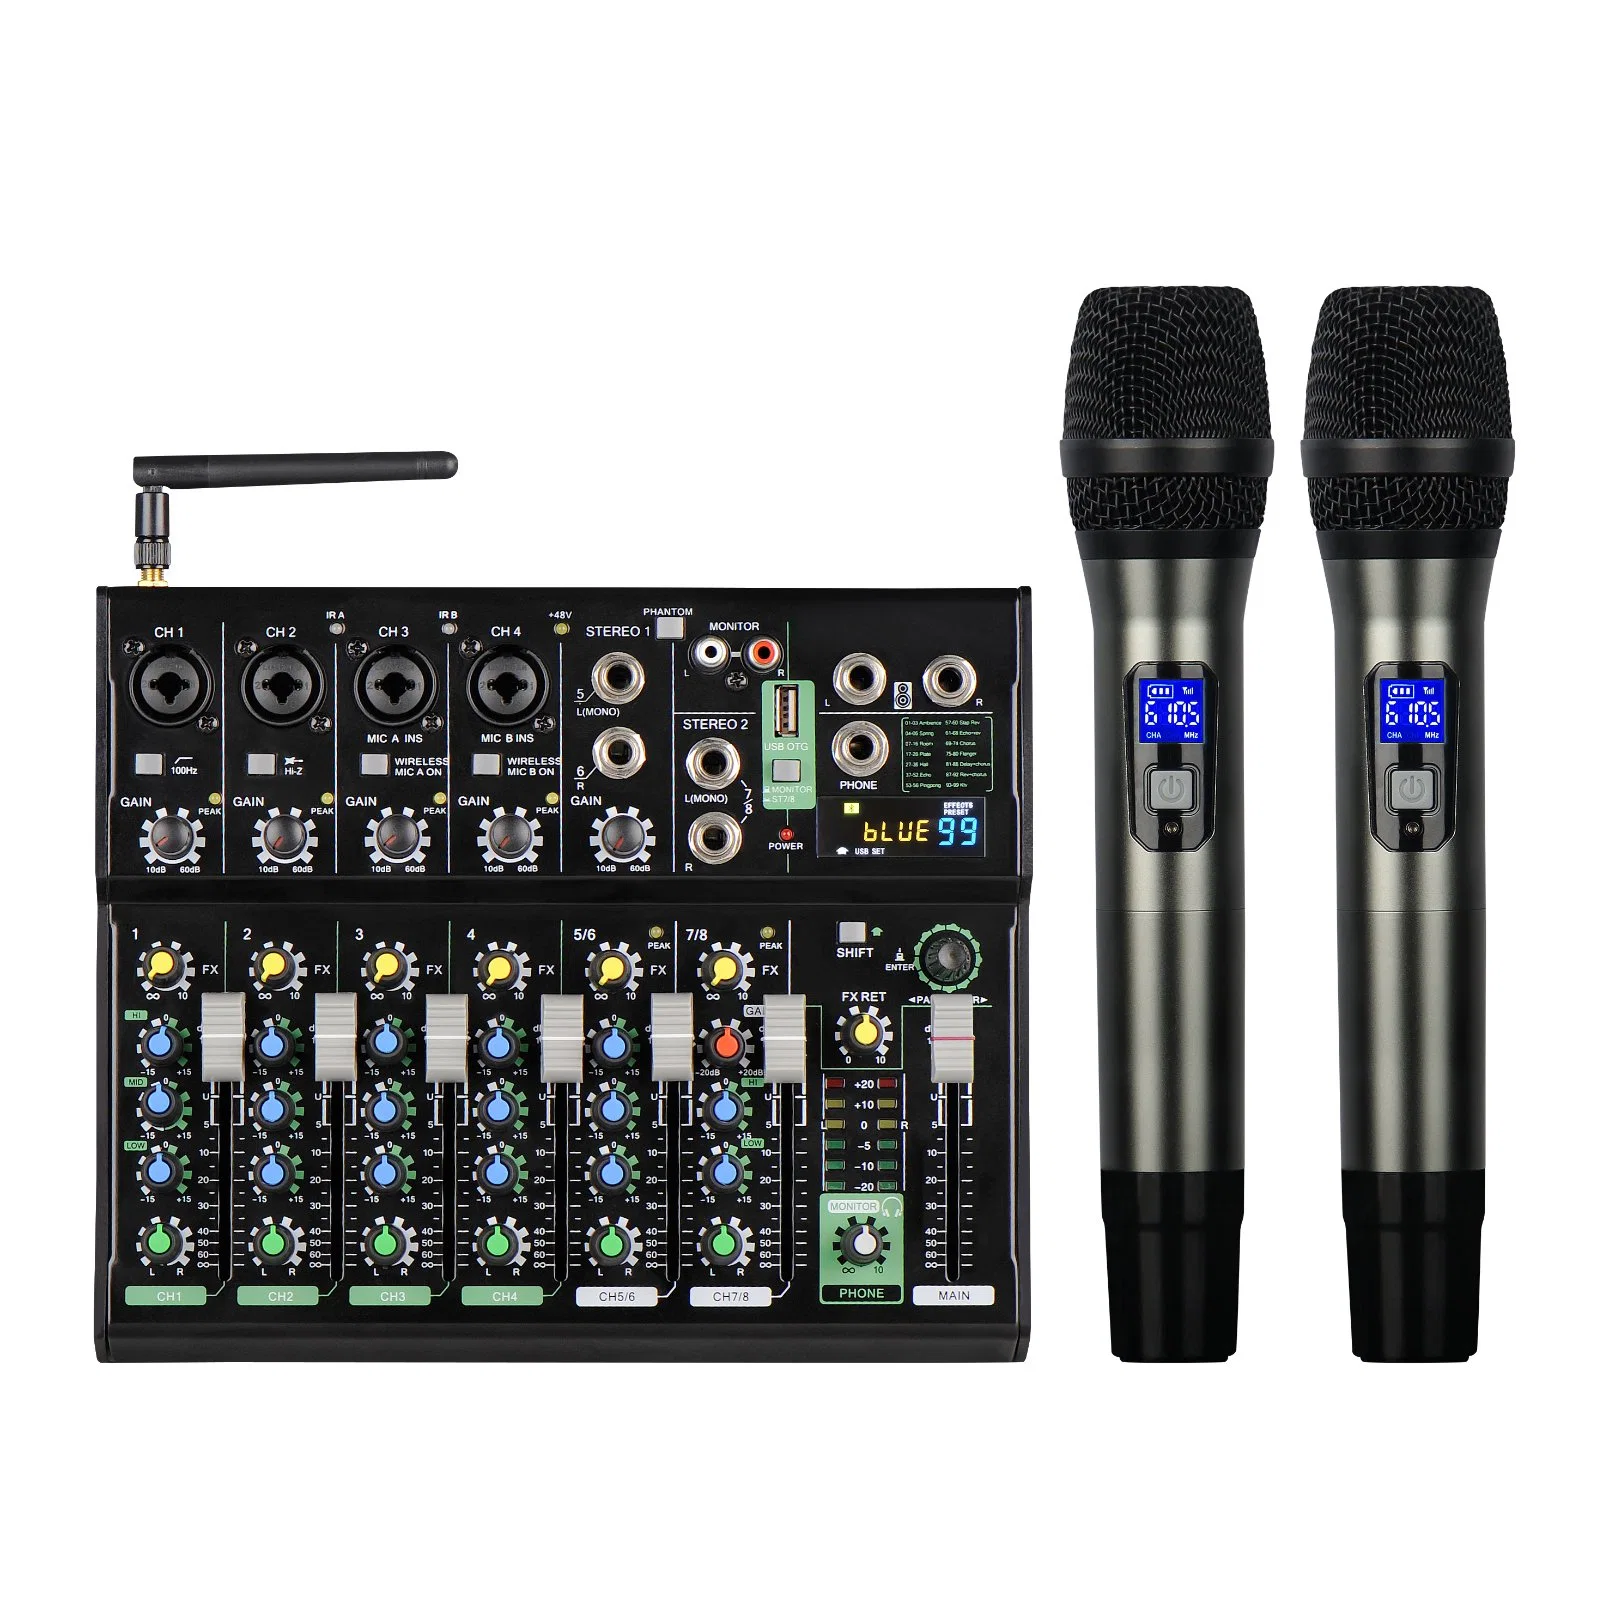 Mickle Mit4-Wmic Mezclador de audio 4 canales de micrófono inalámbrico UHF con MP3 entrada USB alimentación Phantom de 48V mezclador de sonido de audio digital.